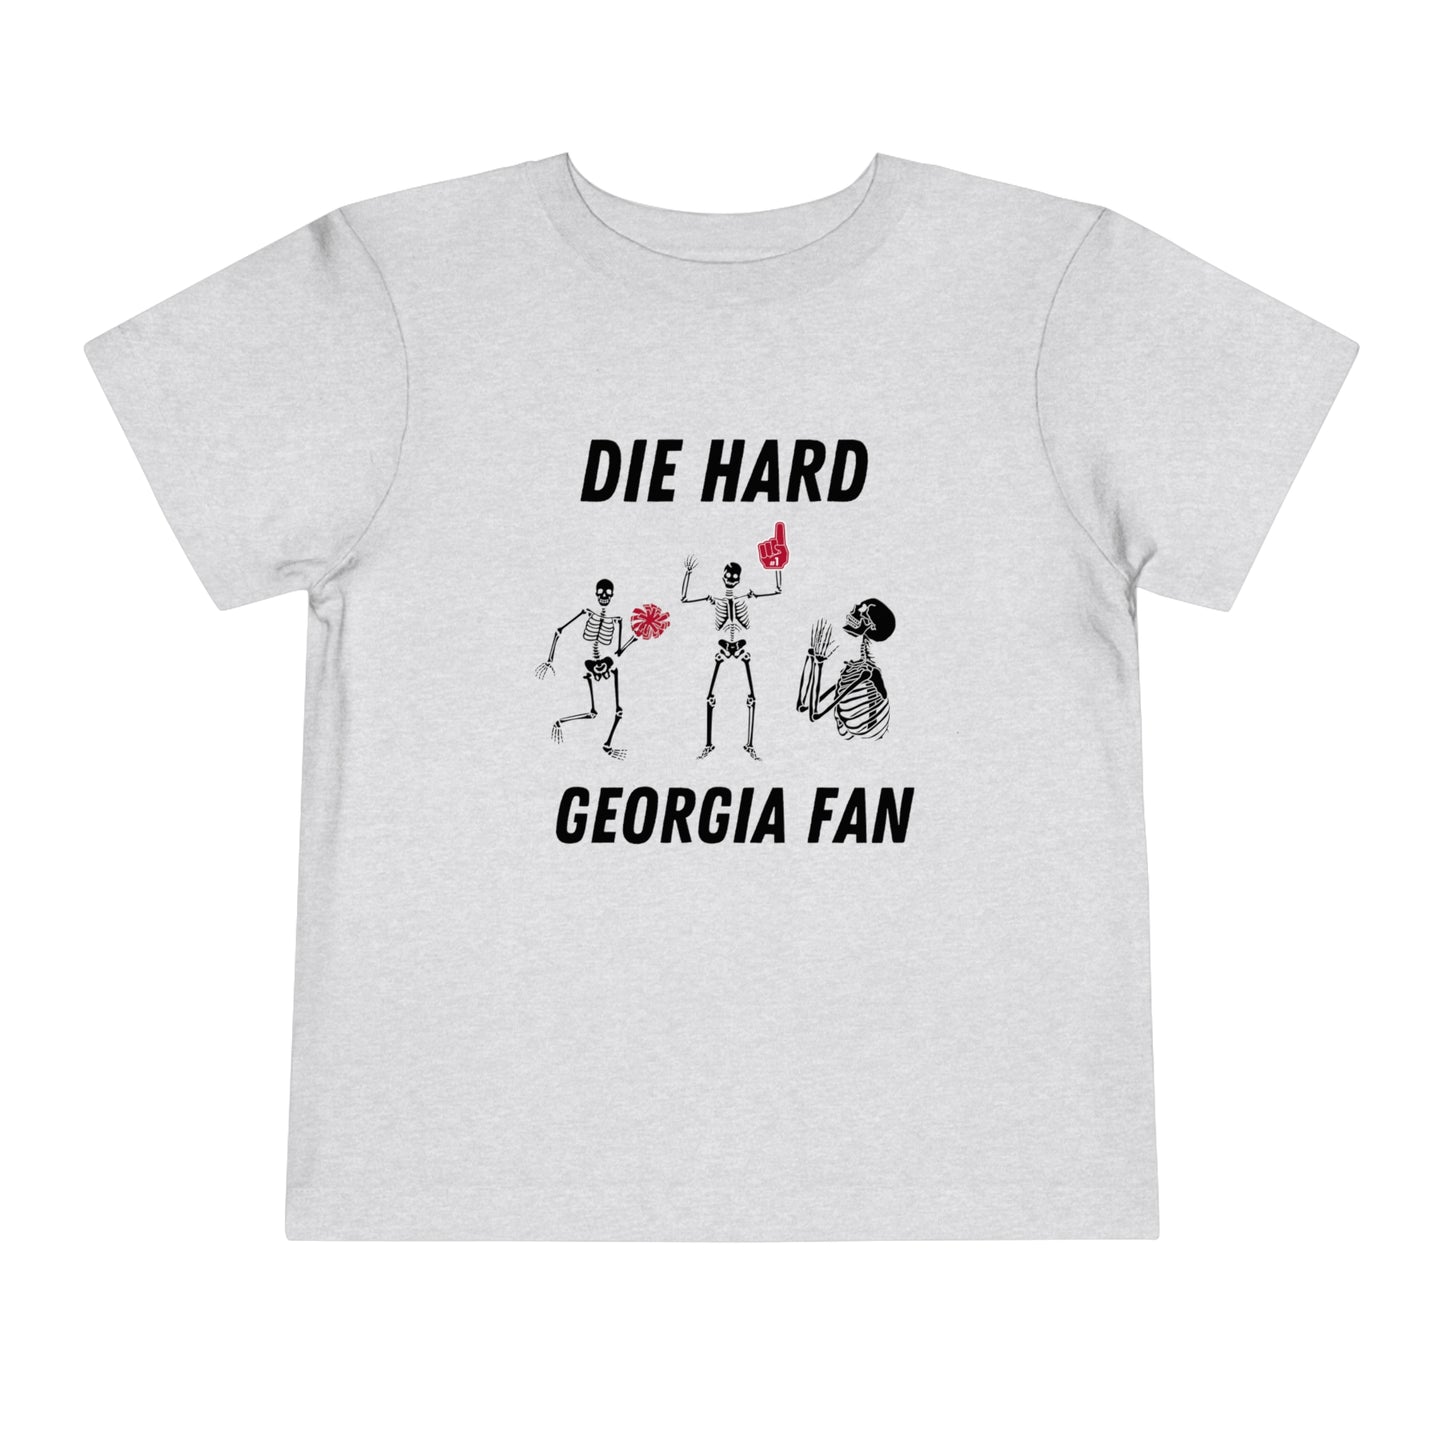 Georgia "Die Hard" Toddler Tee